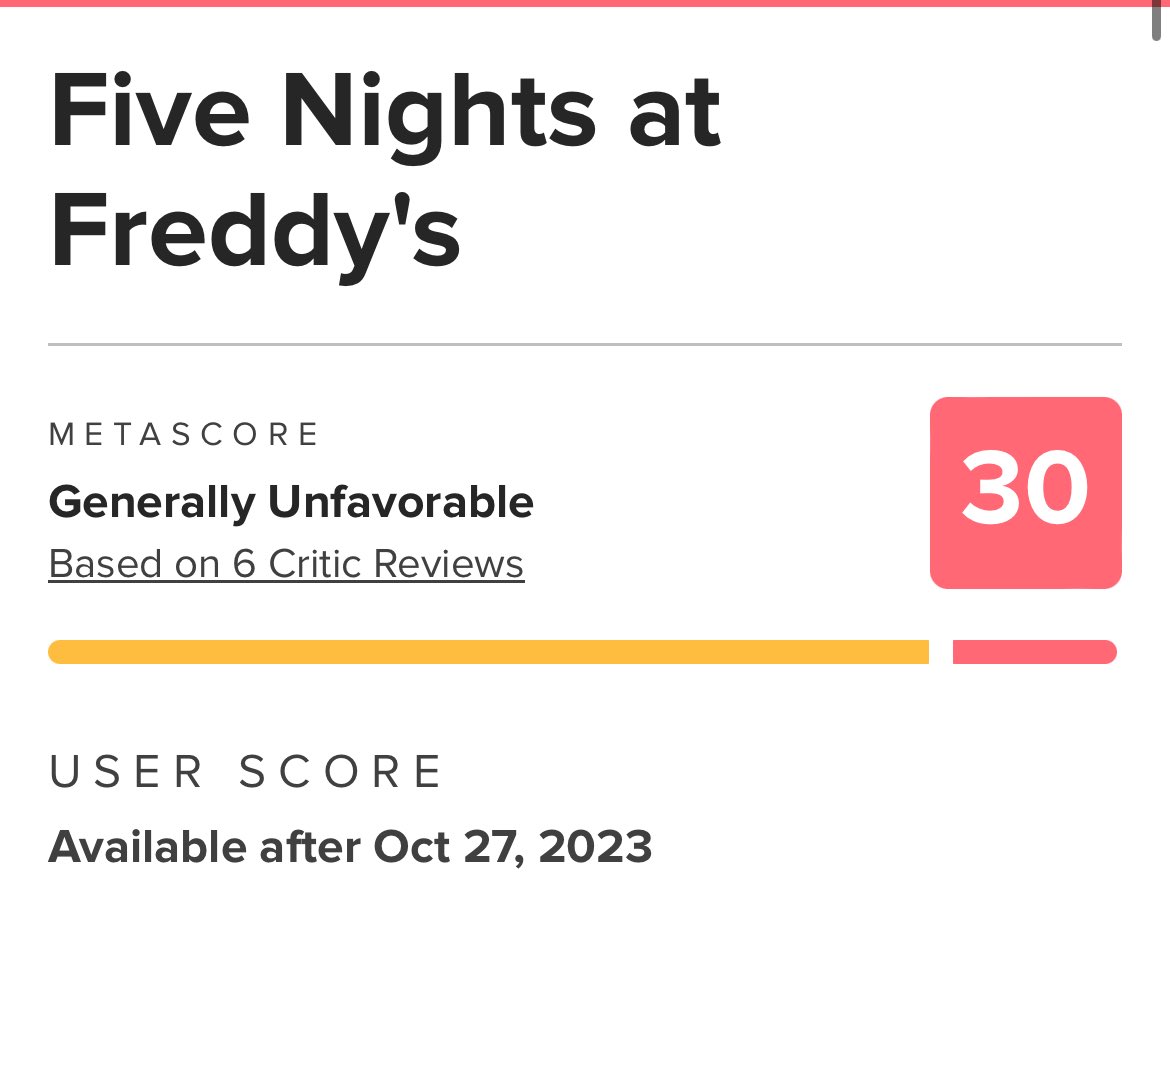 Five Nights at Freddy's estreia com nota 30 no metacritic  Filme chega  amanhã 21h nas plataformas digitais - Notícias Cinema - BCharts Fórum